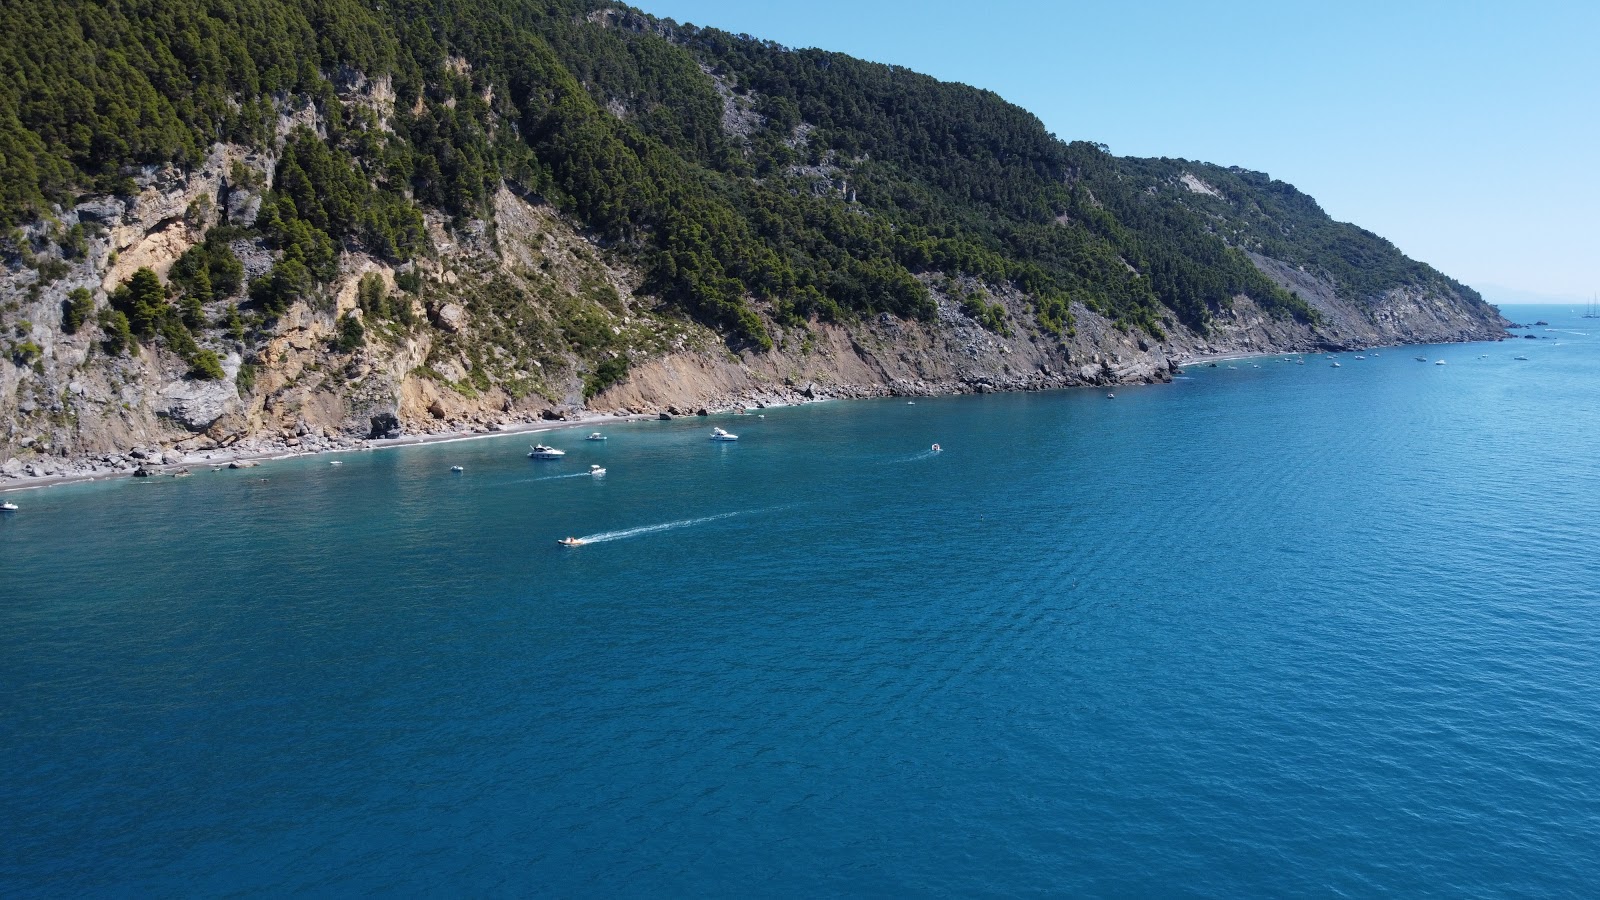 Photo of Spiaggia La Marossa located in natural area